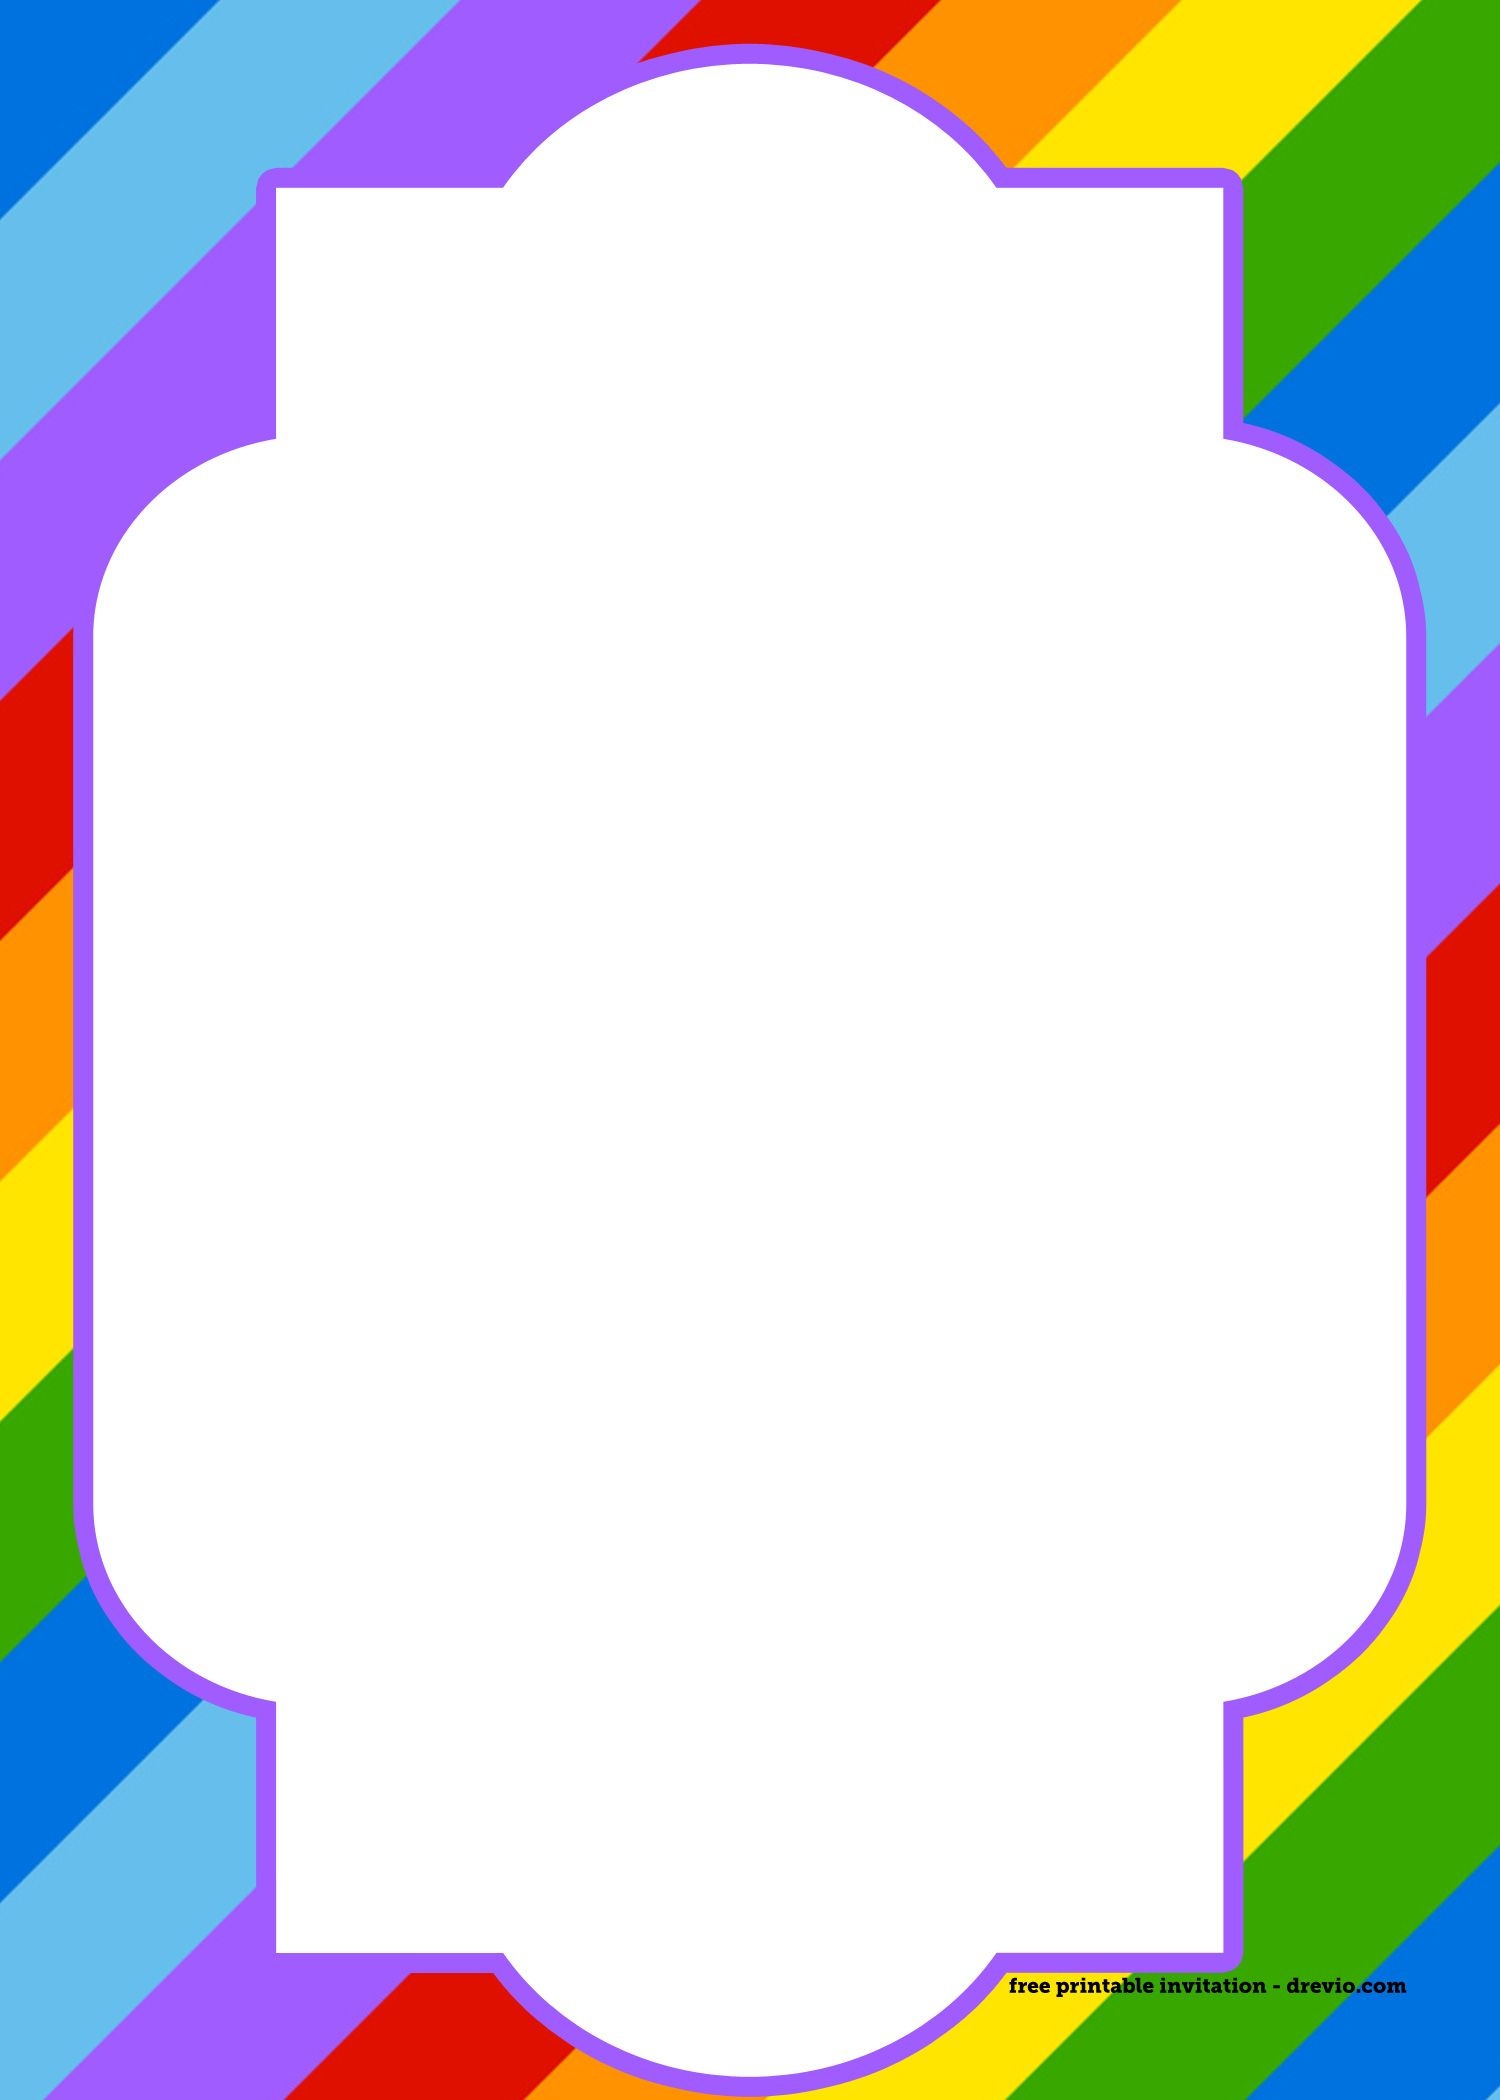 Free Printable Rainbow Invitation Template + Thank You Card | Bday - Free Printable Rainbow Pictures